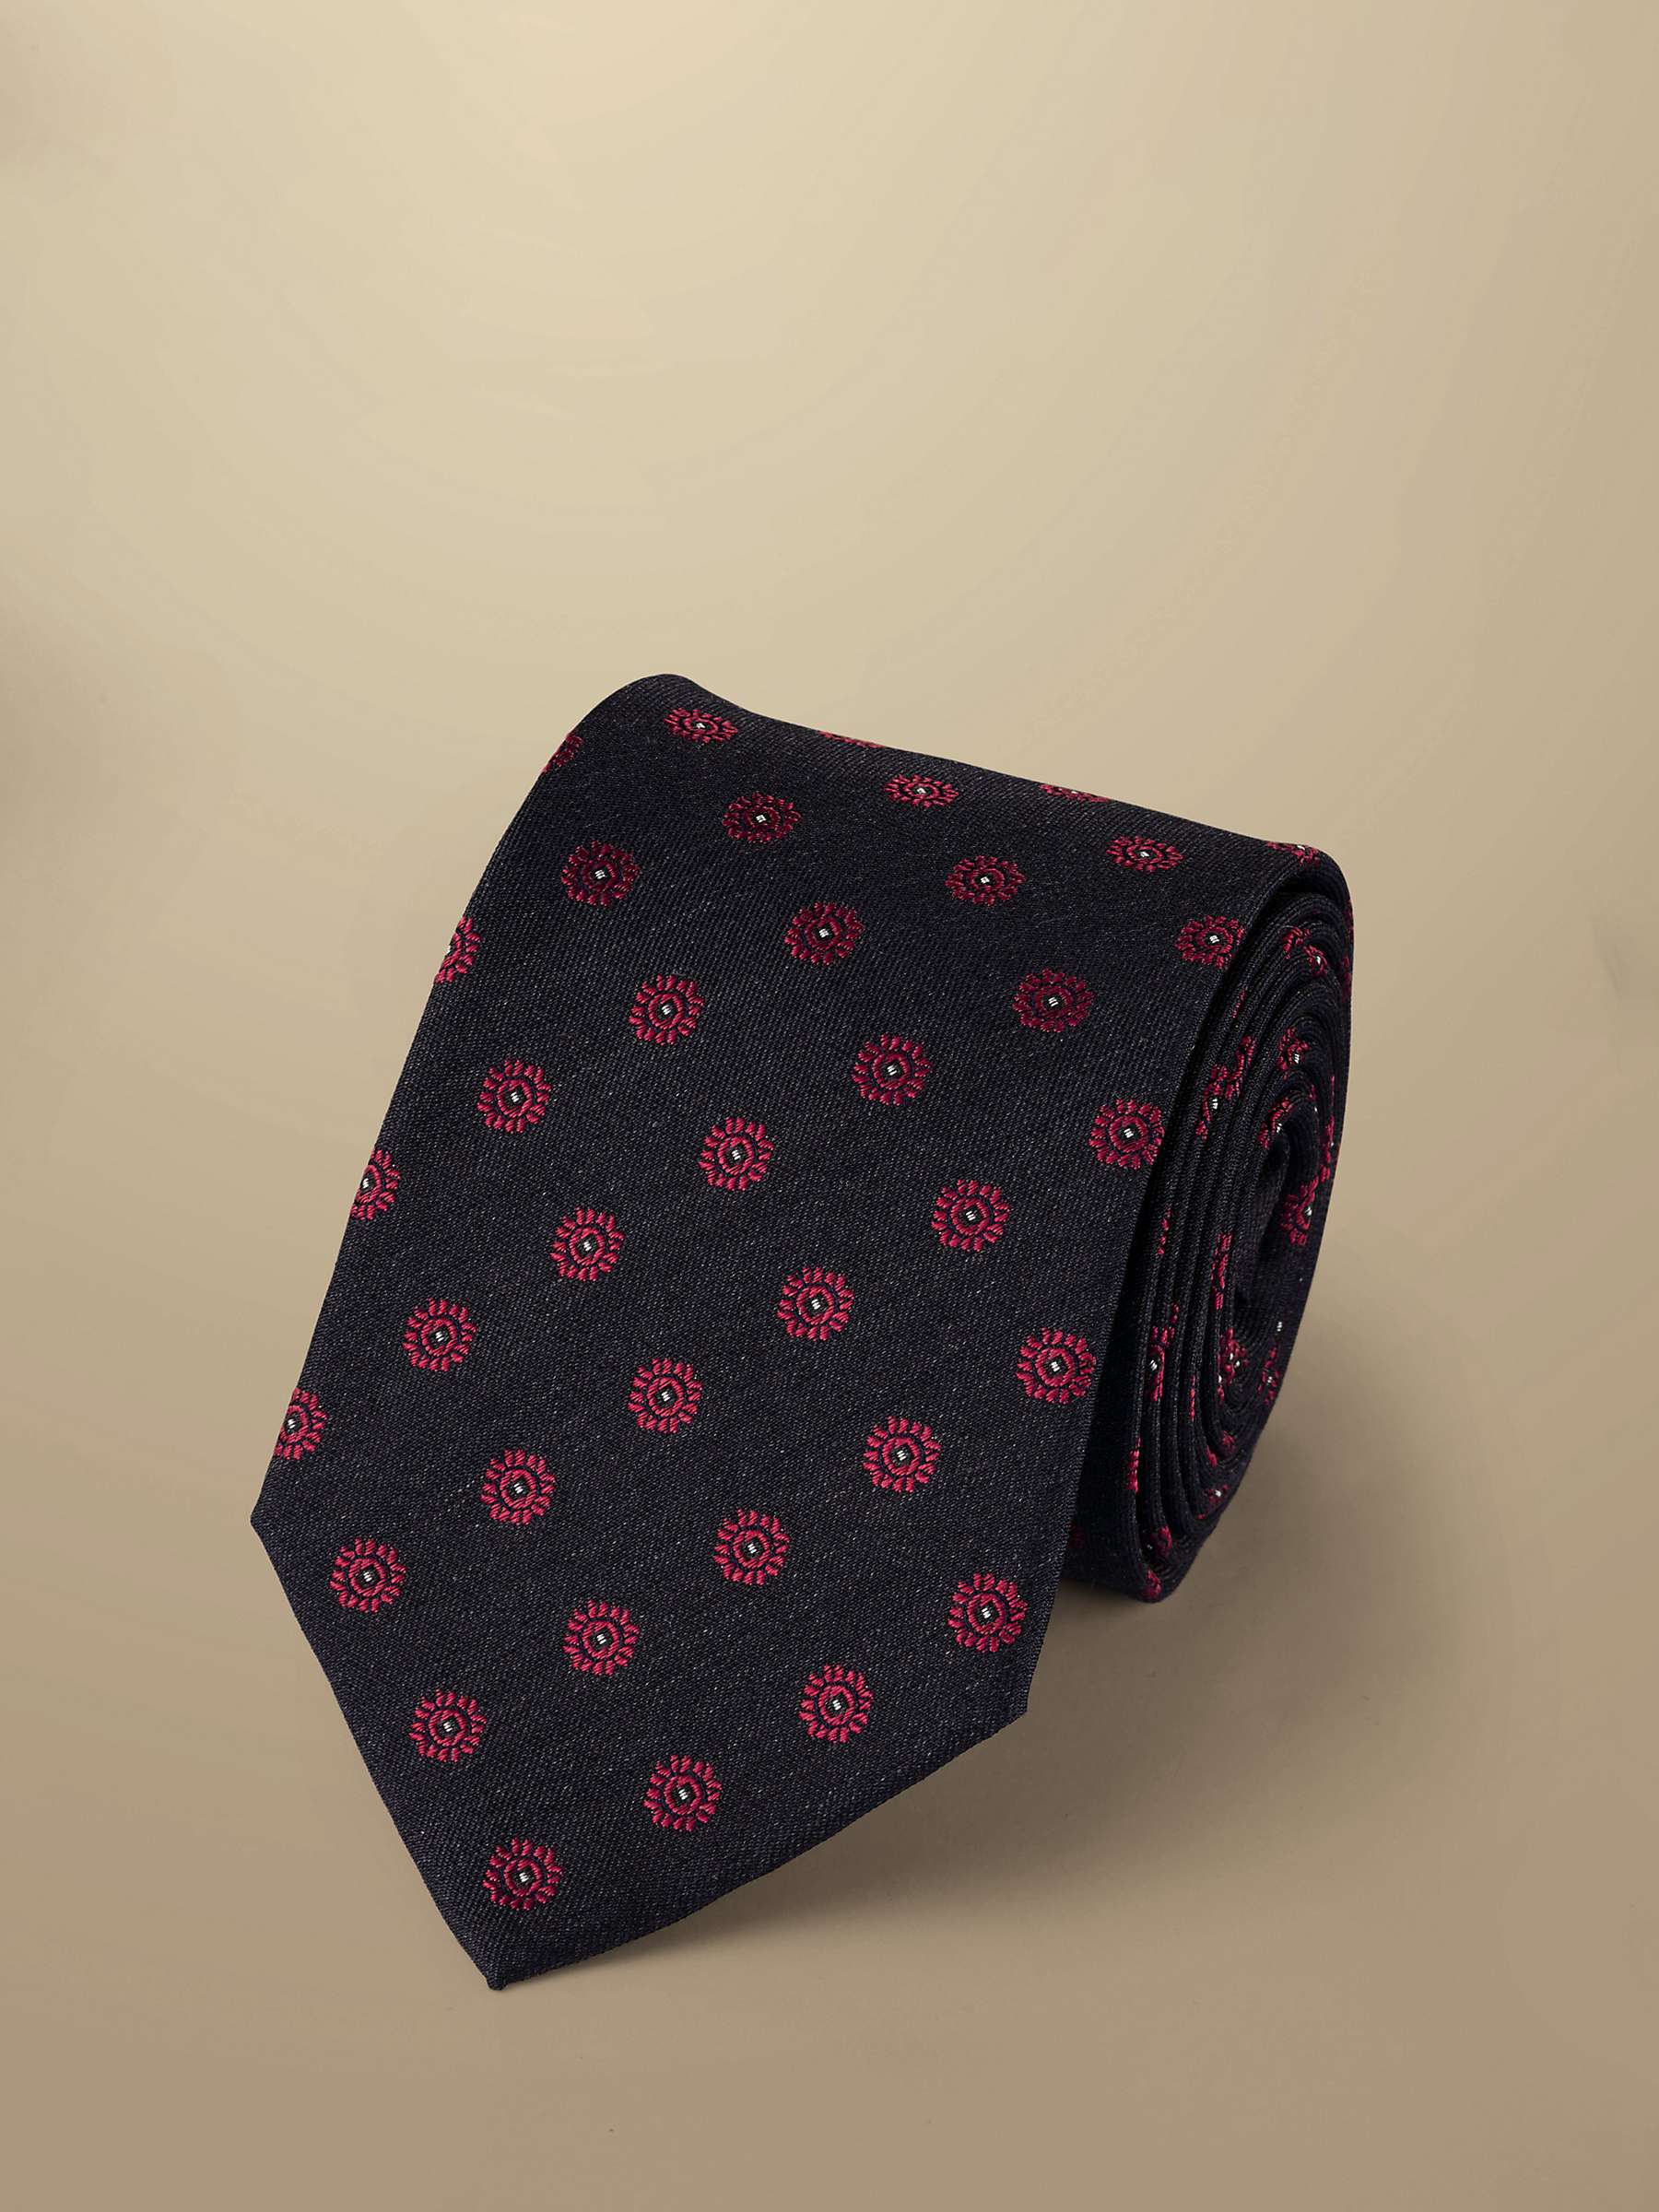 Buy Charles Tyrwhitt Medallion Silk Stain Resistant Tie Online at johnlewis.com